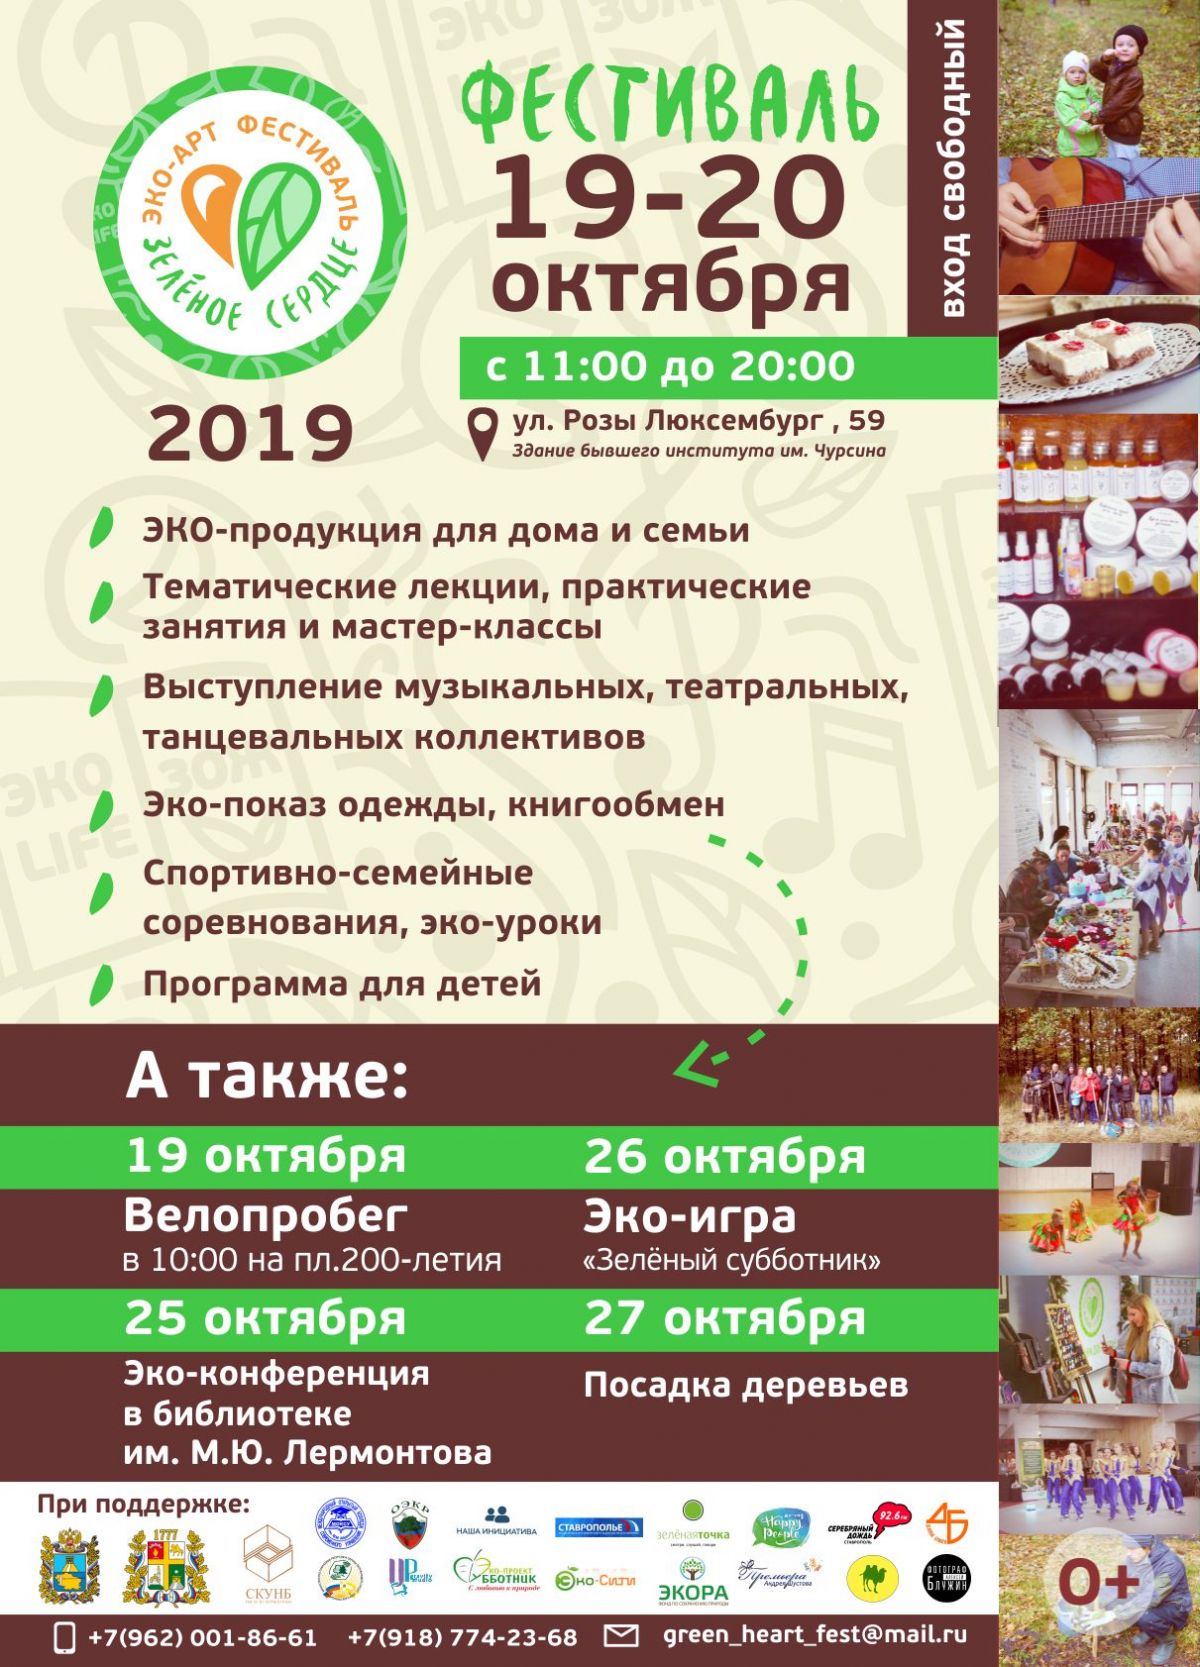 Эко-арт фестиваль «Зеленое сердце» продлится в Ставрополе 5 дней